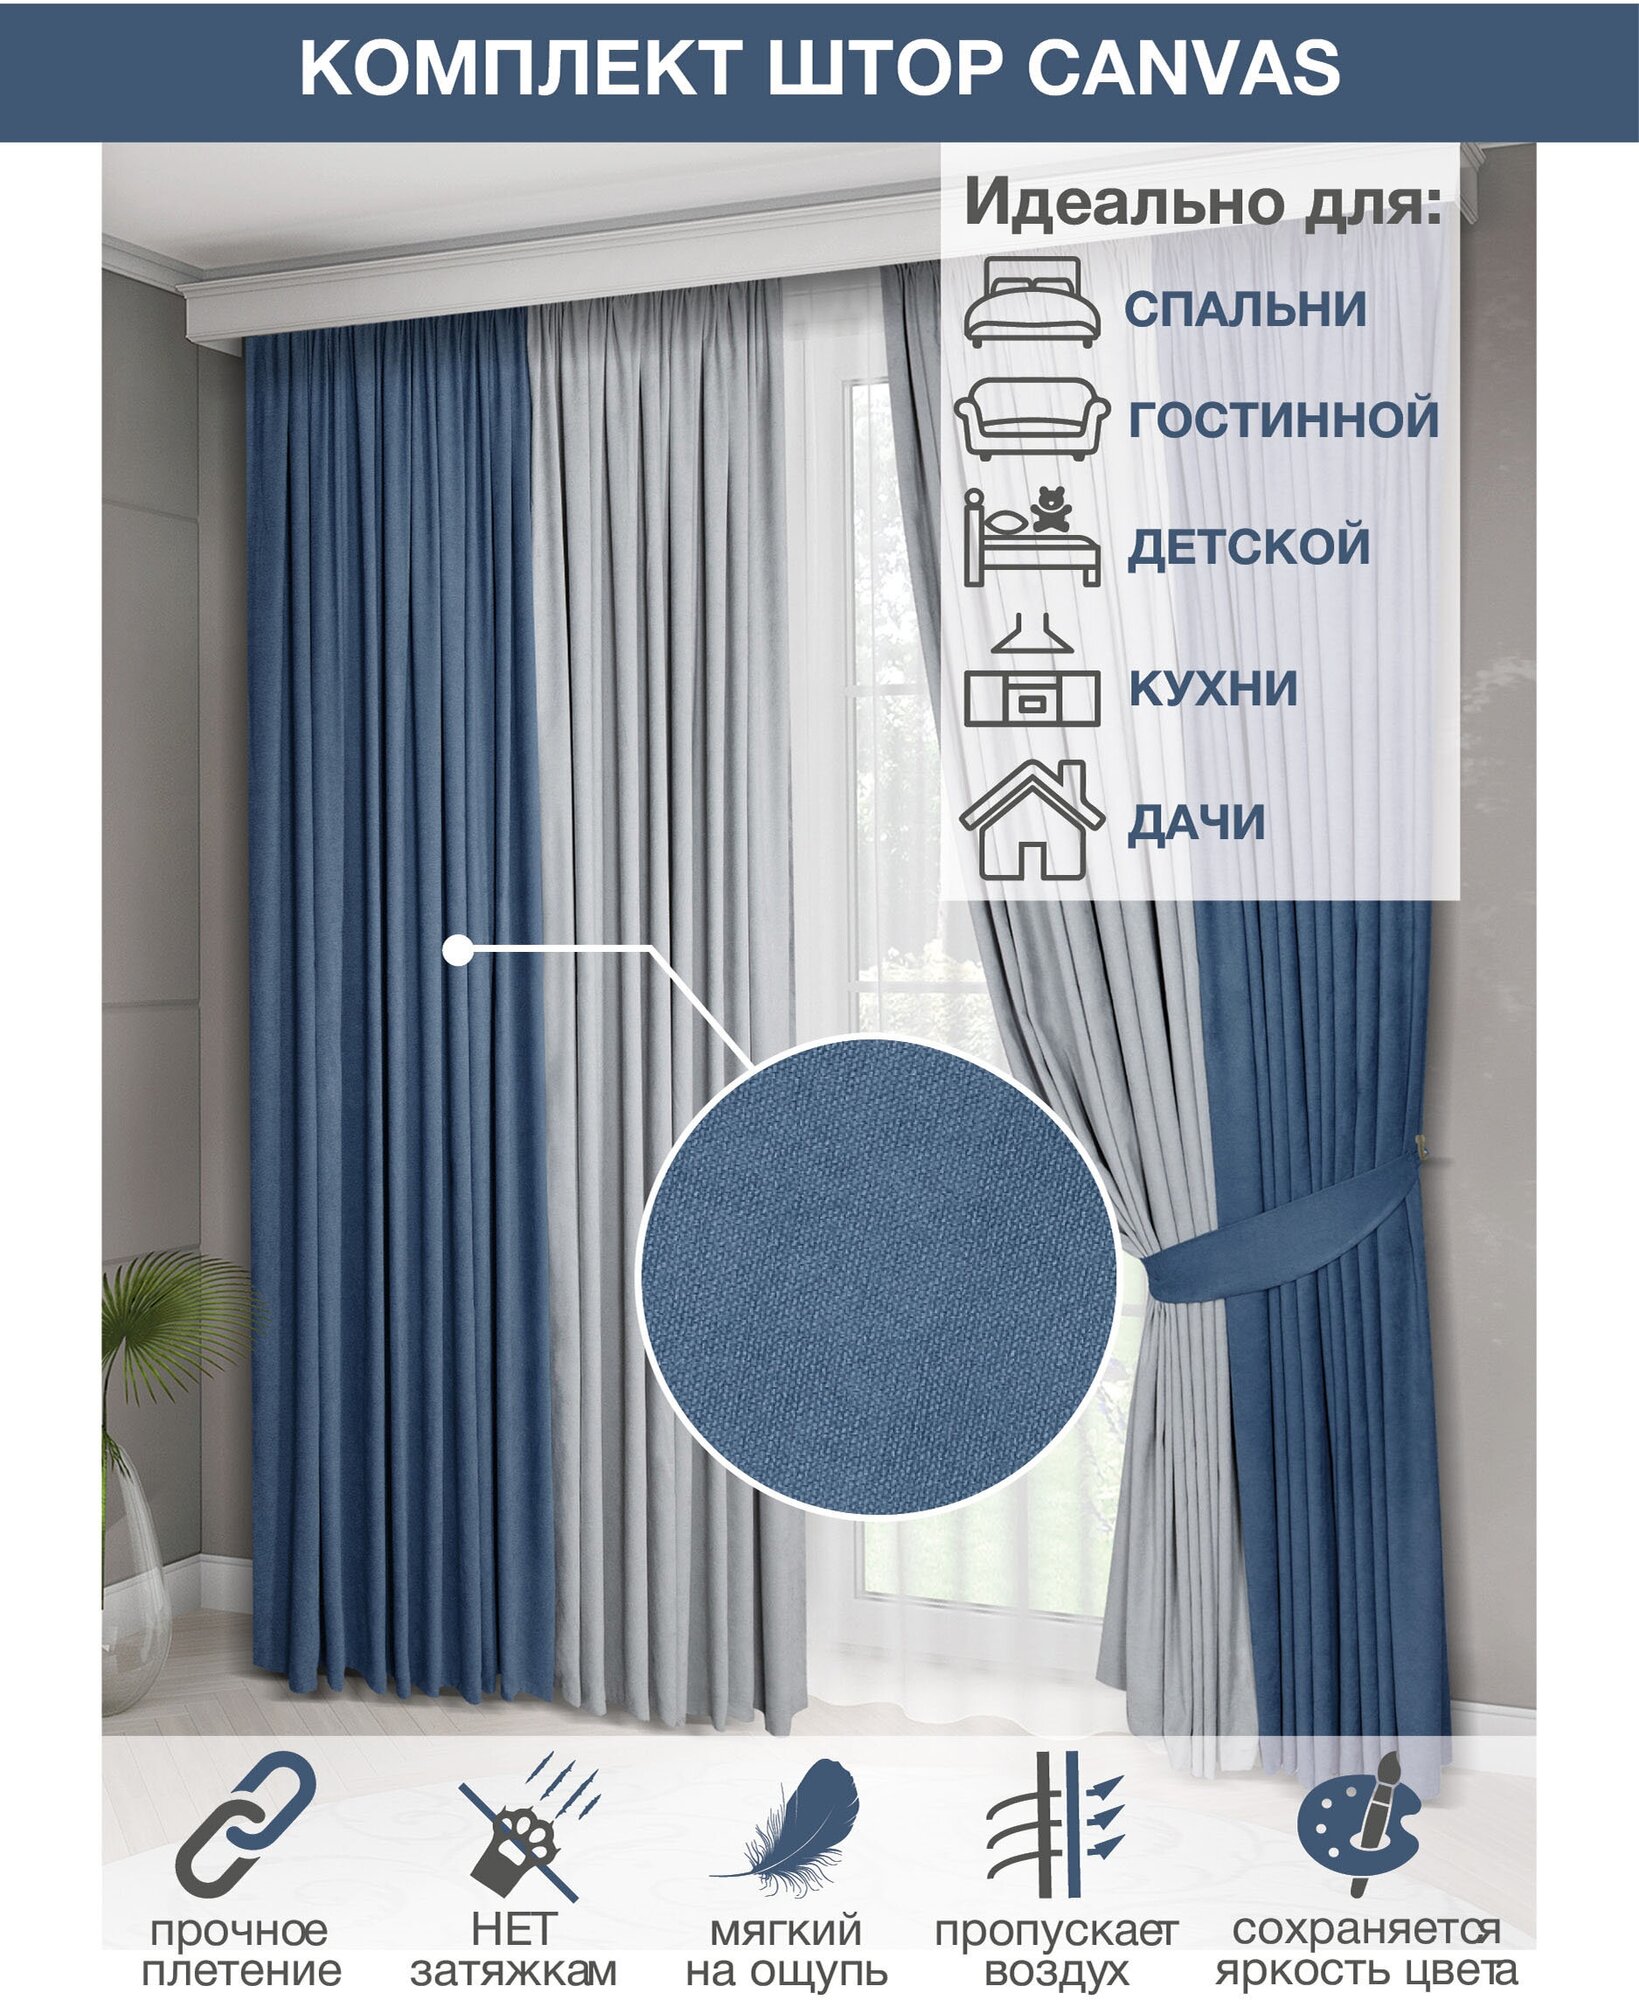 Комплект штор Colore Caldo для гостиной, спальни, детской (250*270)см, 2шт, серый, синий - фотография № 10